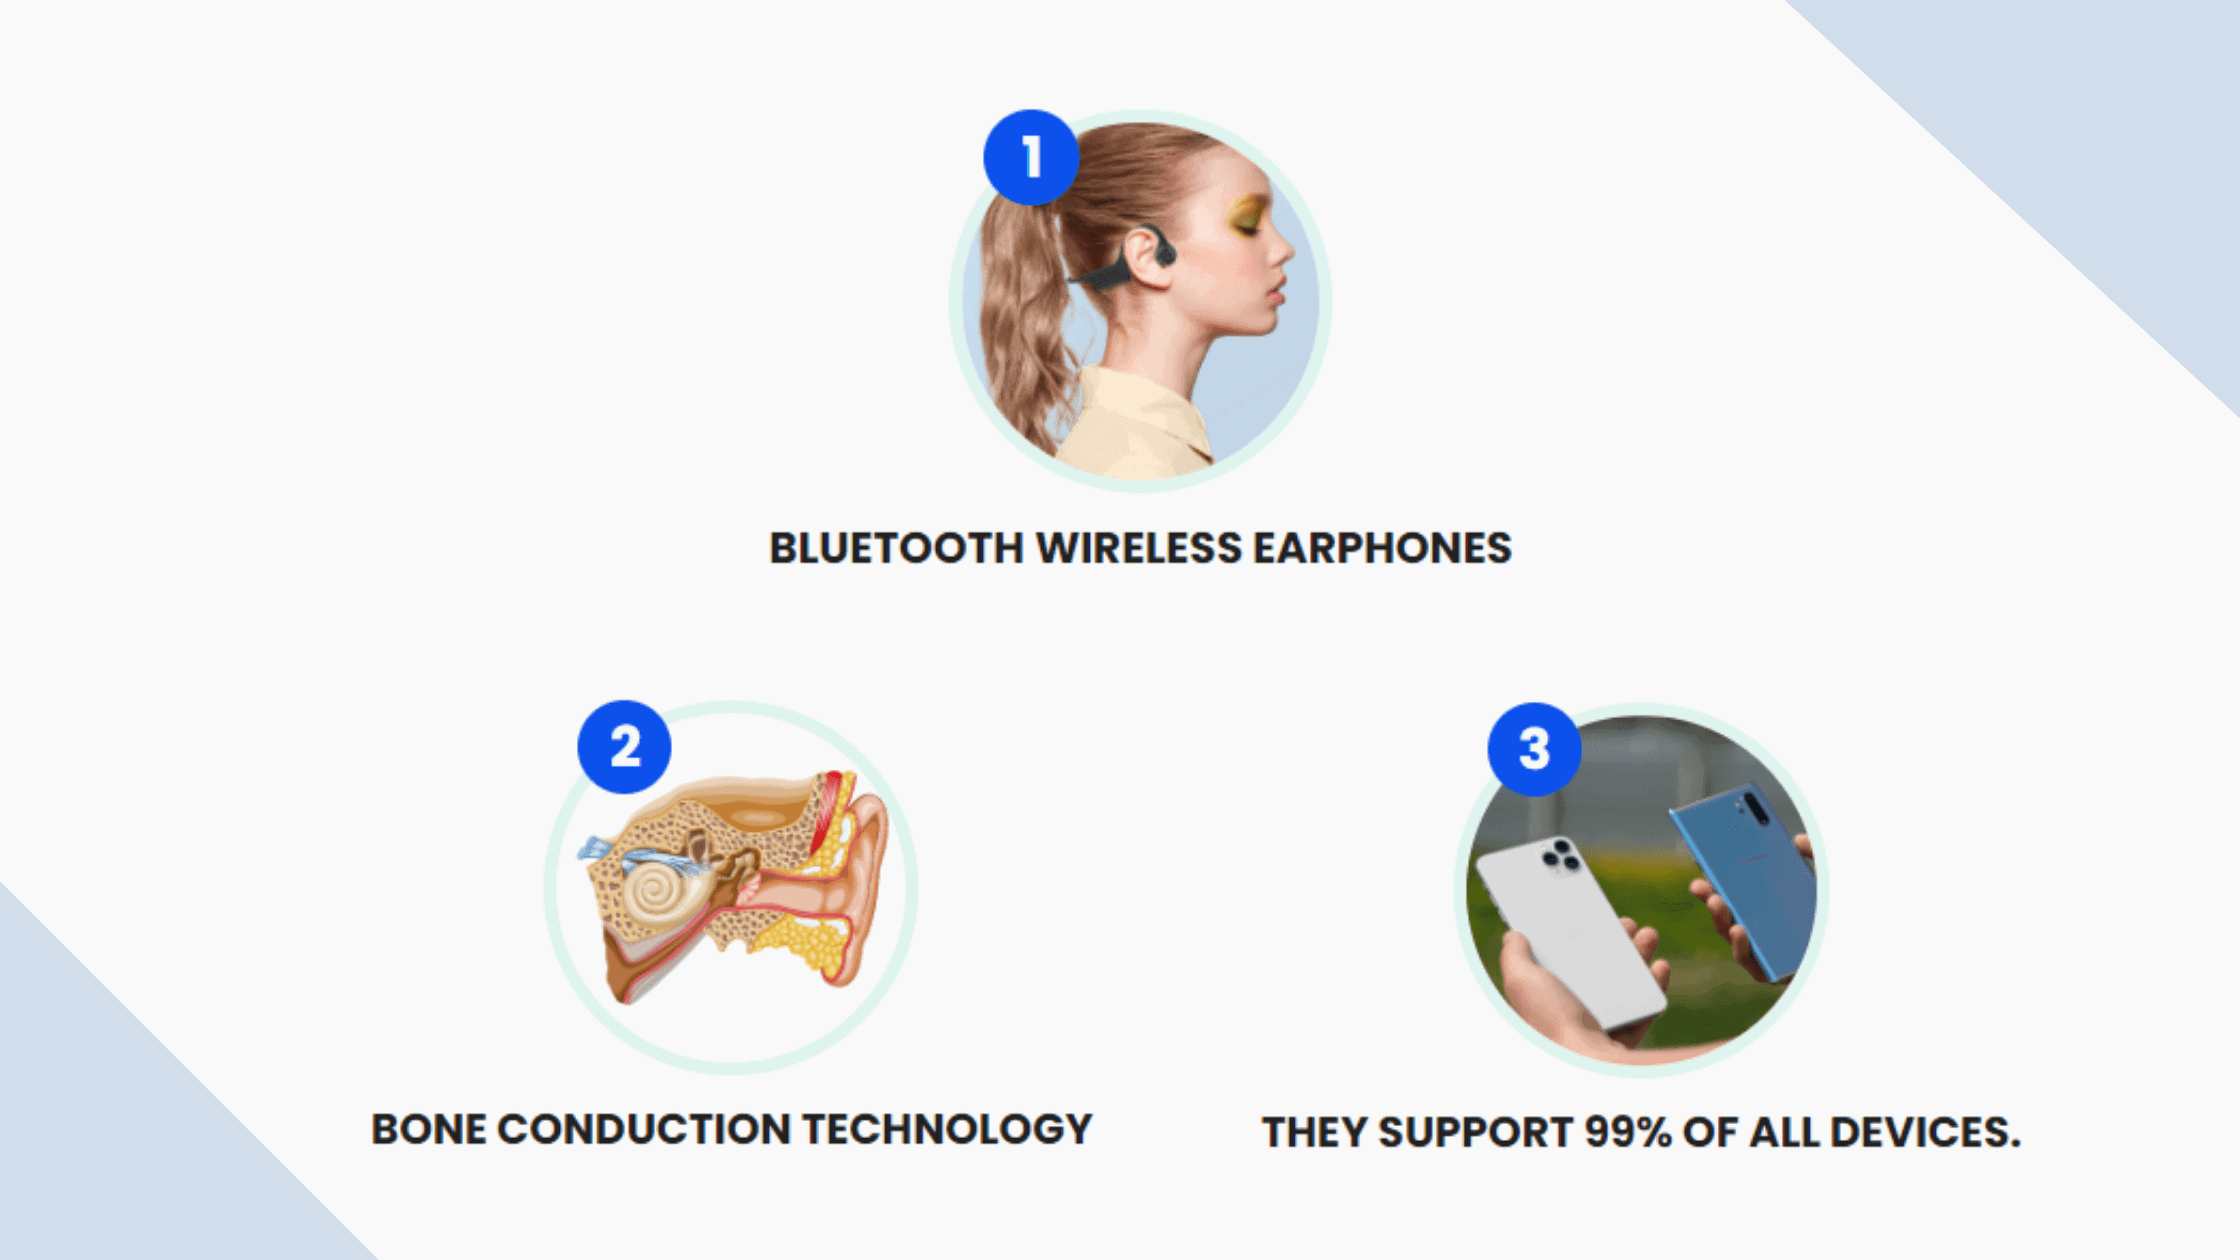 Aeerum Wireless Earphones benefits